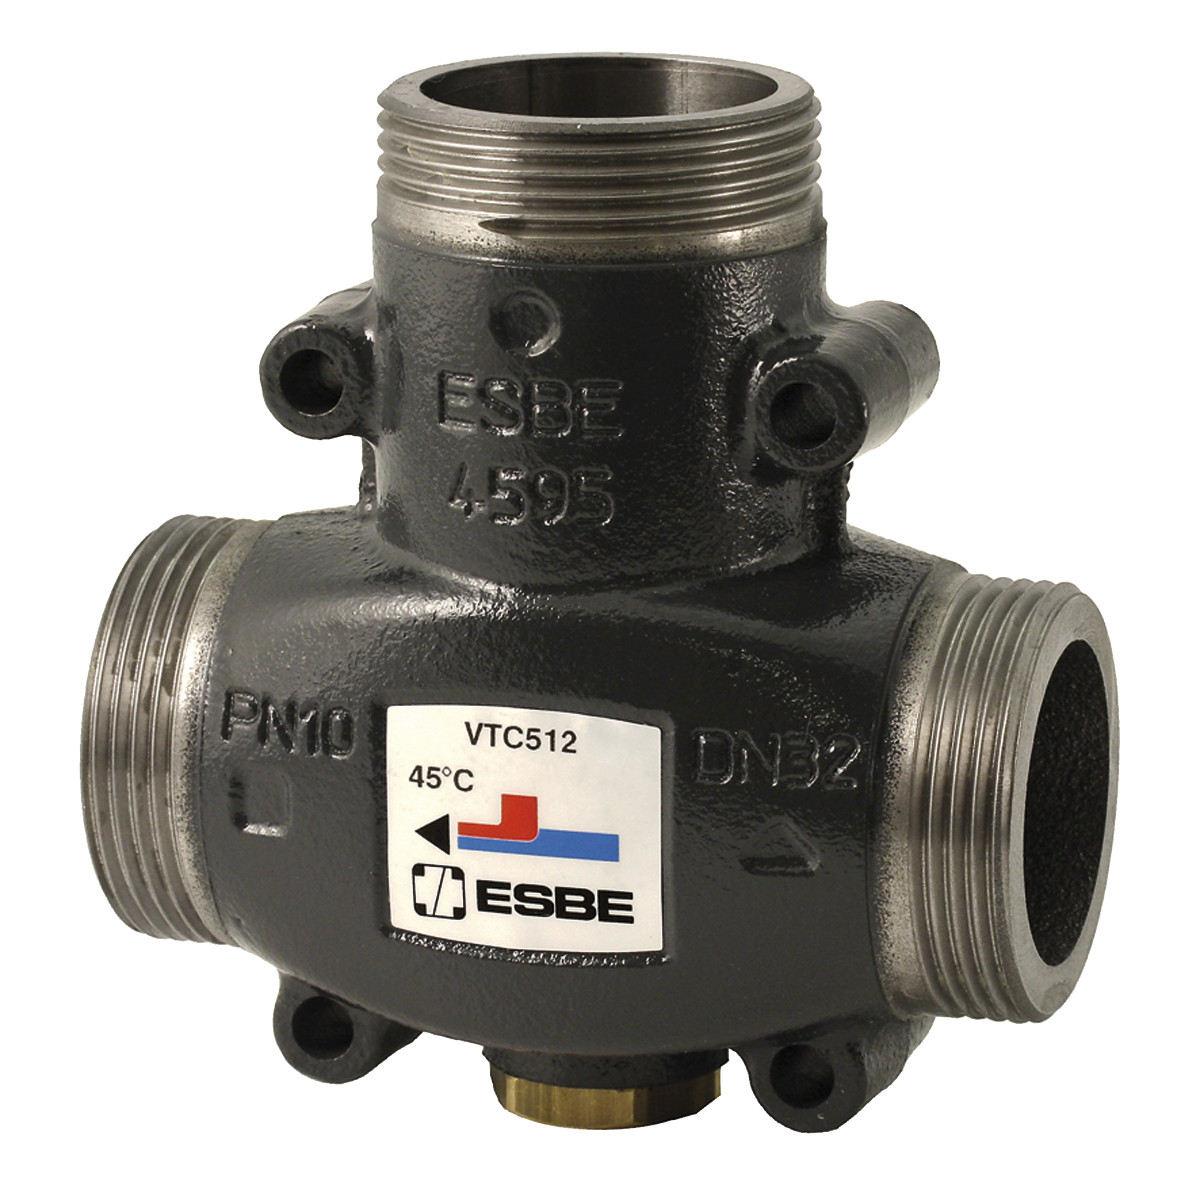 Термостатический смесительный клапан ESBE VTC 512 65°C G 1 1/4" артикул 51022500